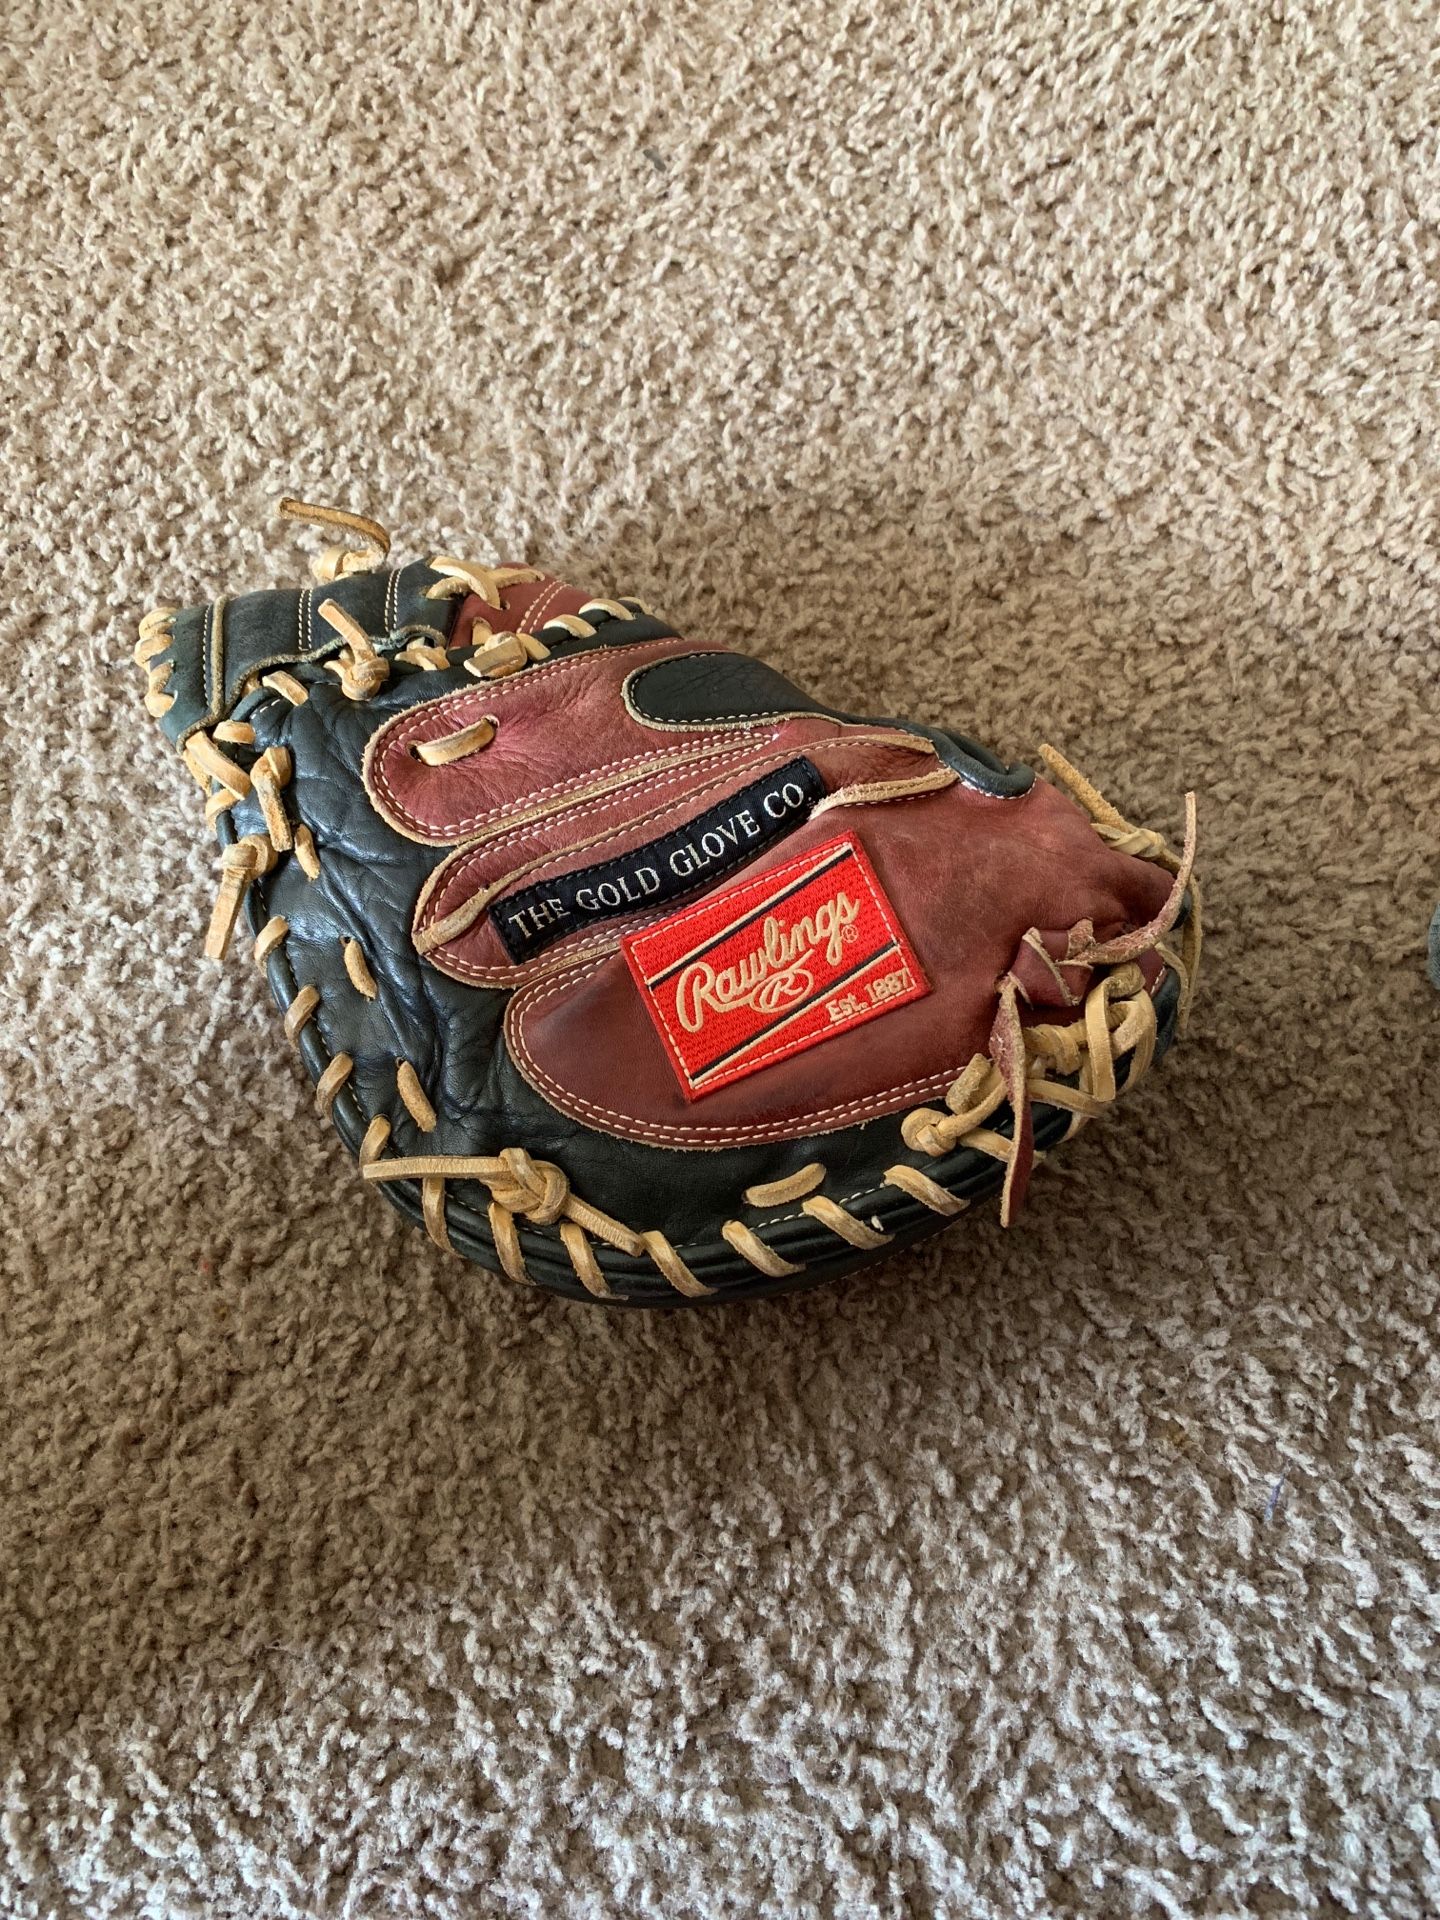 Rawlings baseball glove